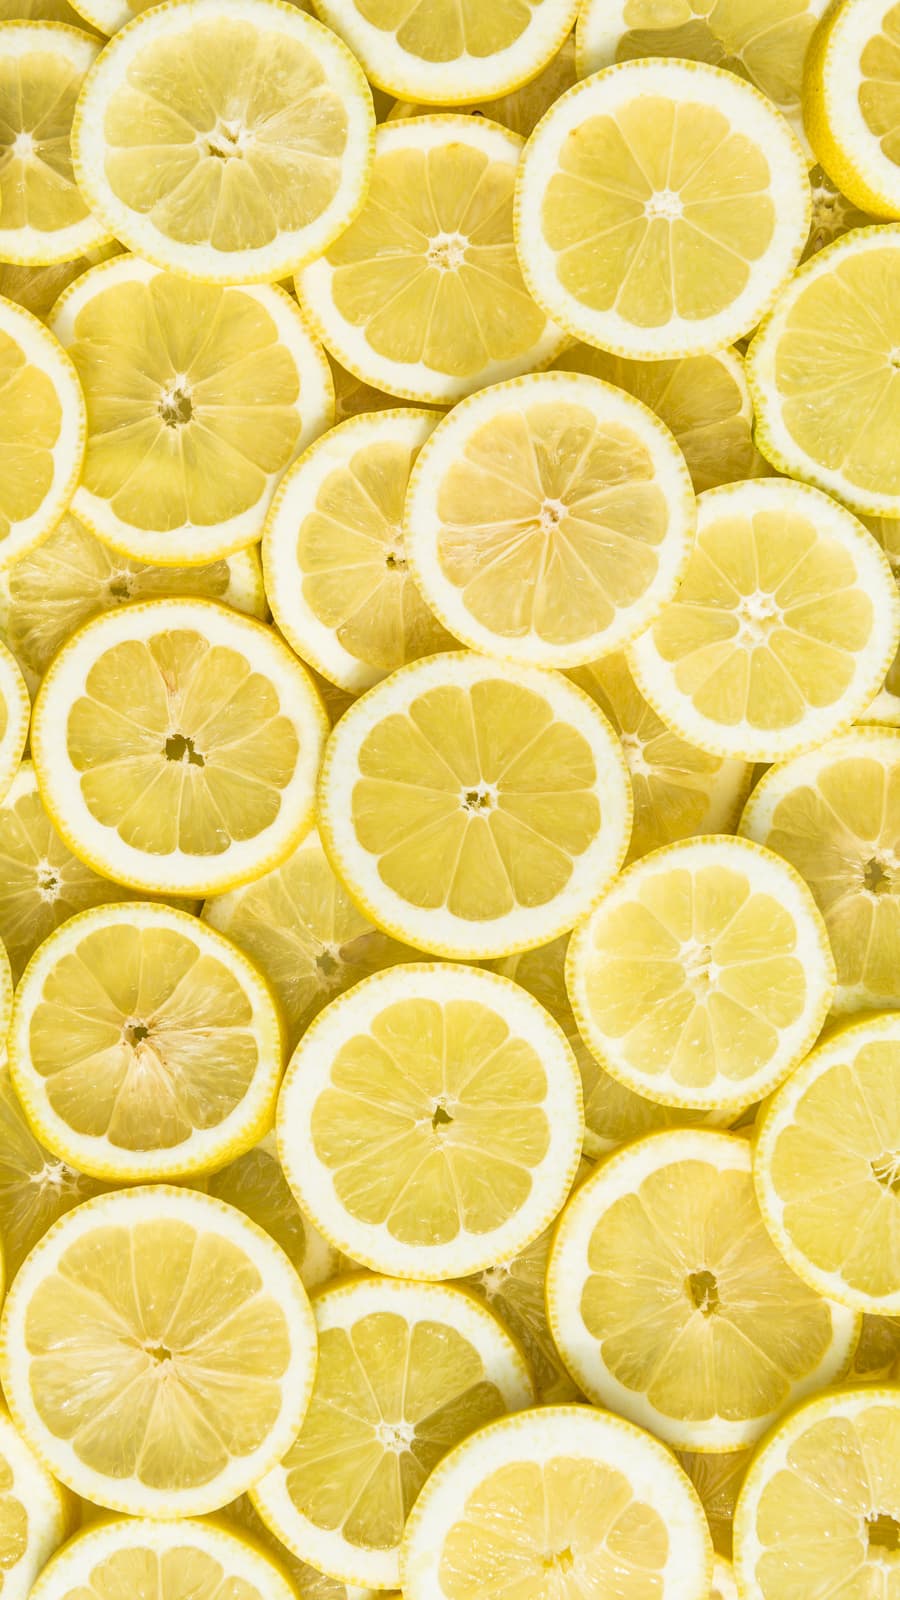 A pile of lemon wheels